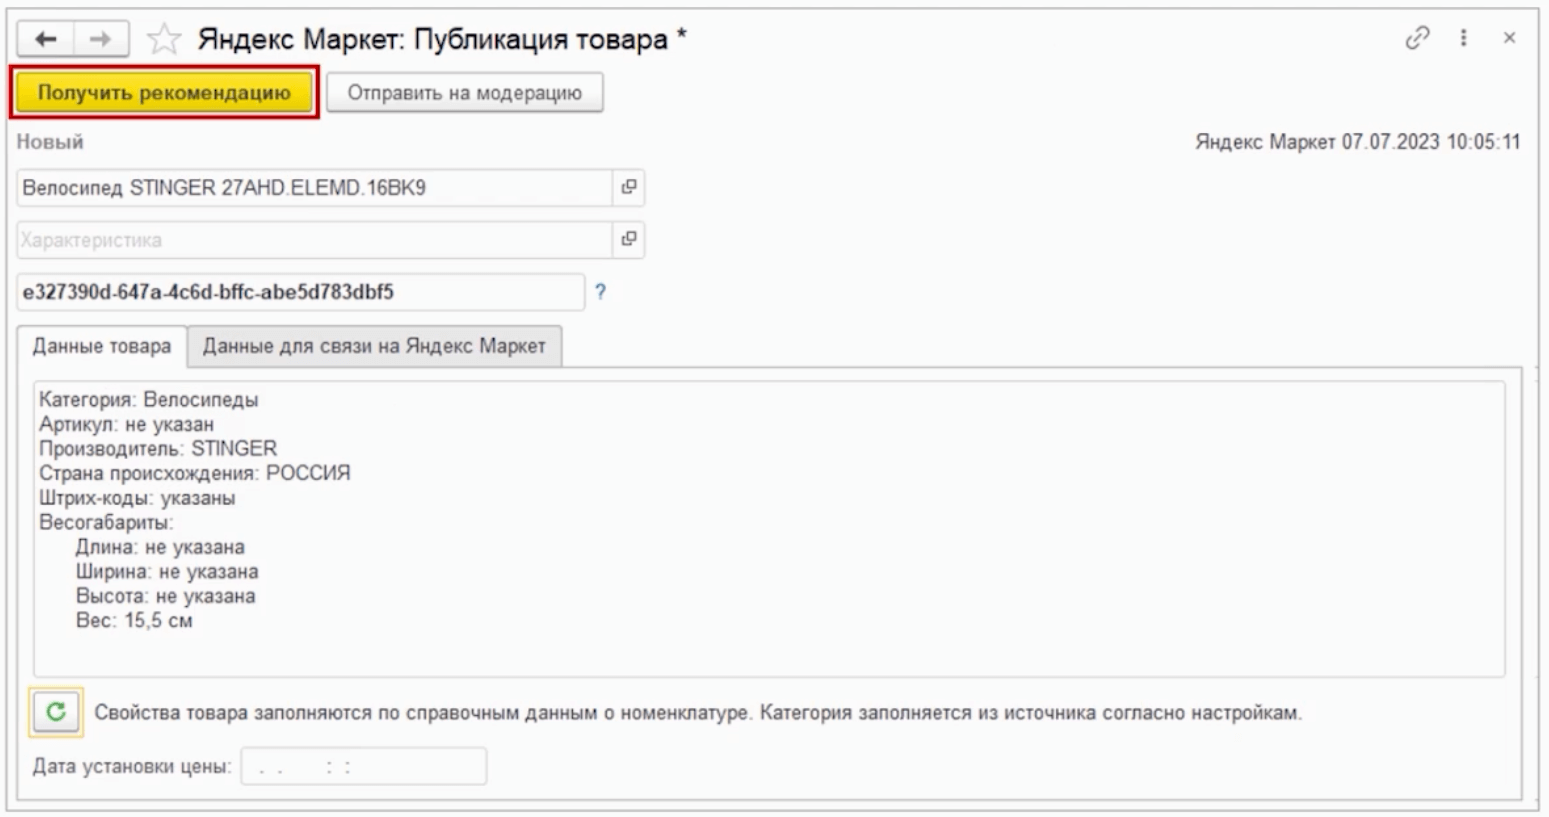 Публикация товаров в Яндекс Маркете через 1С:Фреш, шаг 4 | Refresh